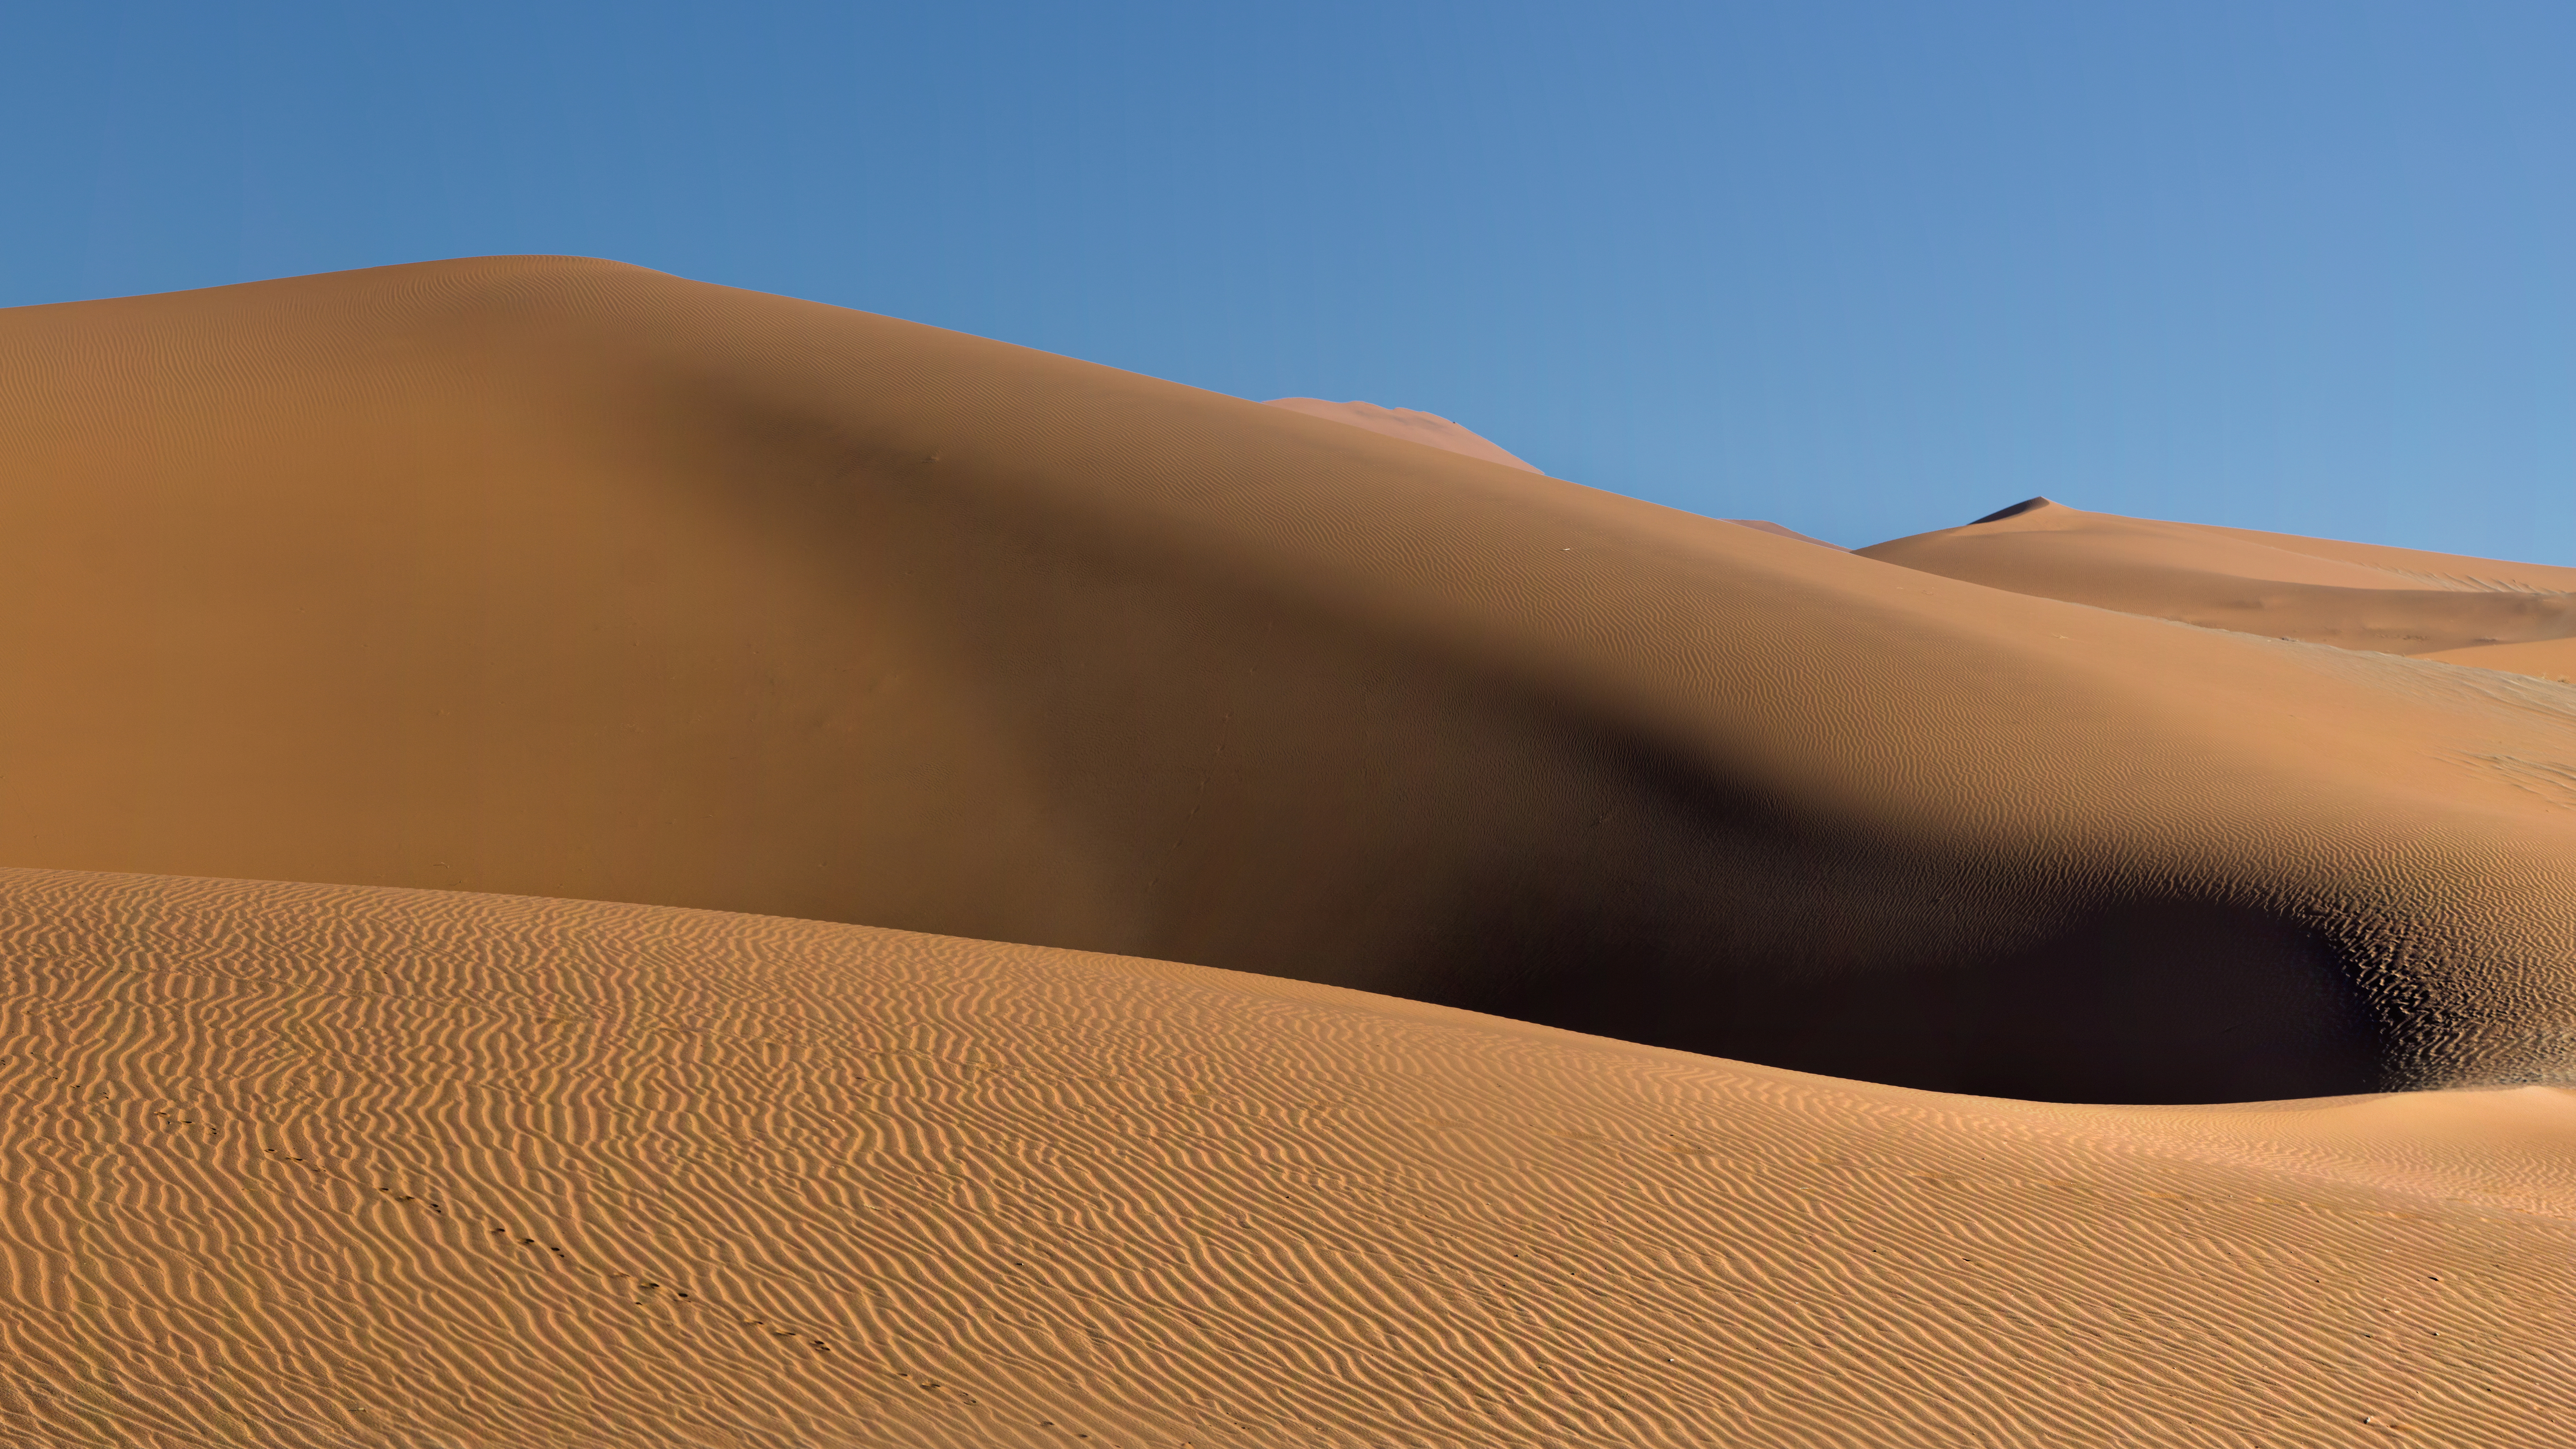 Dune in Namibian desert by Trey Ratcliff